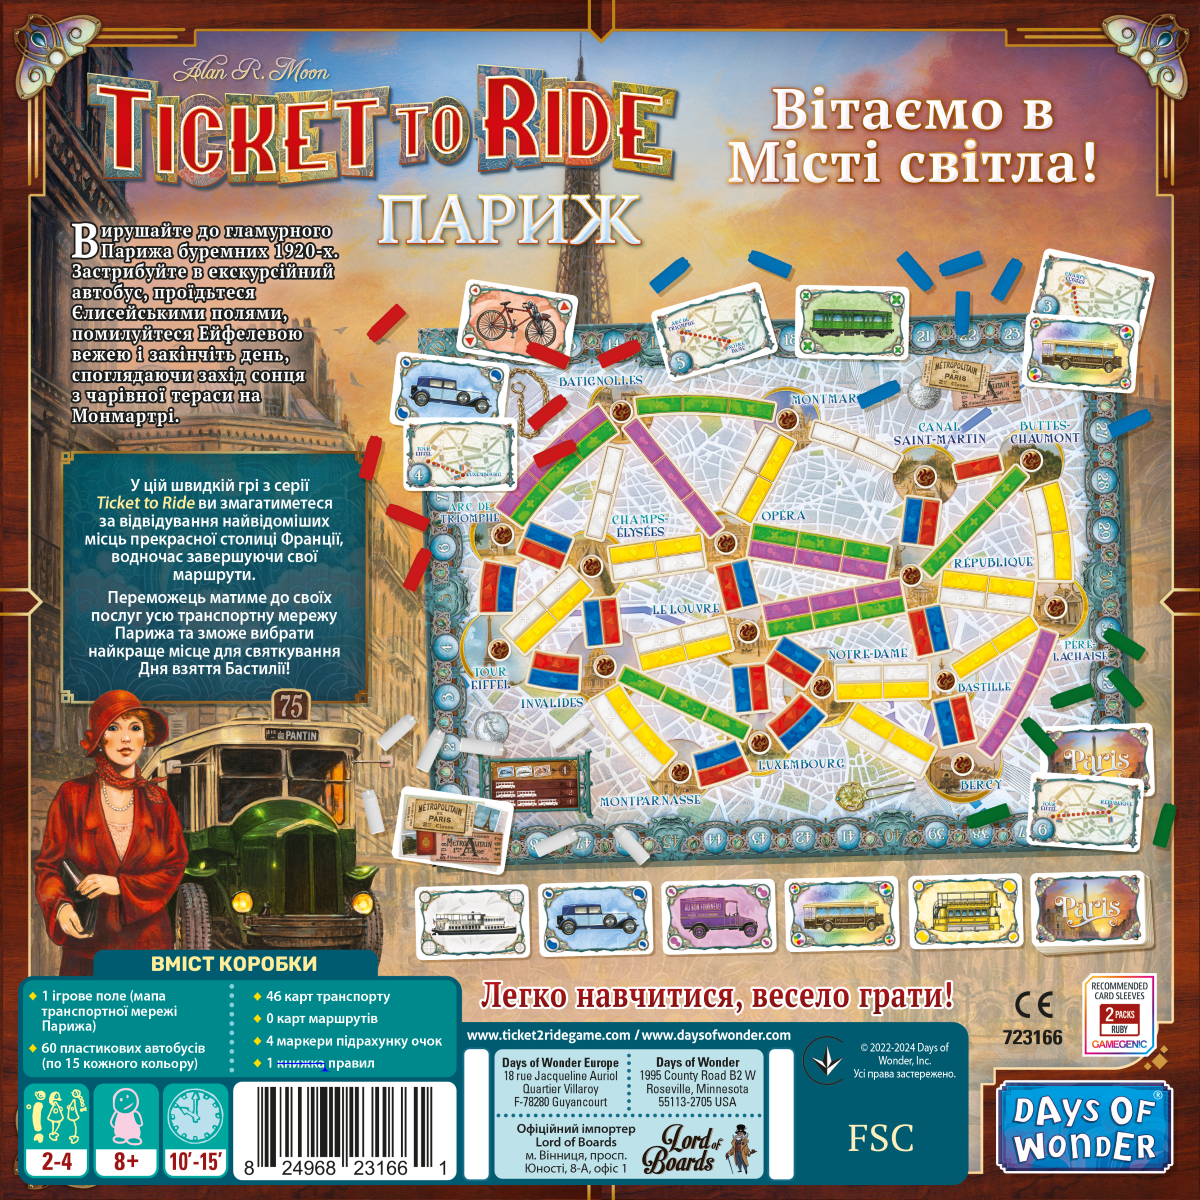 Настільна гра Квиток на потяг. Париж (Ticket To Ride: Paris), бренду Lord of Boards, для 2-4 гравців, час гри < 30хв. - 2 - KUBIX 